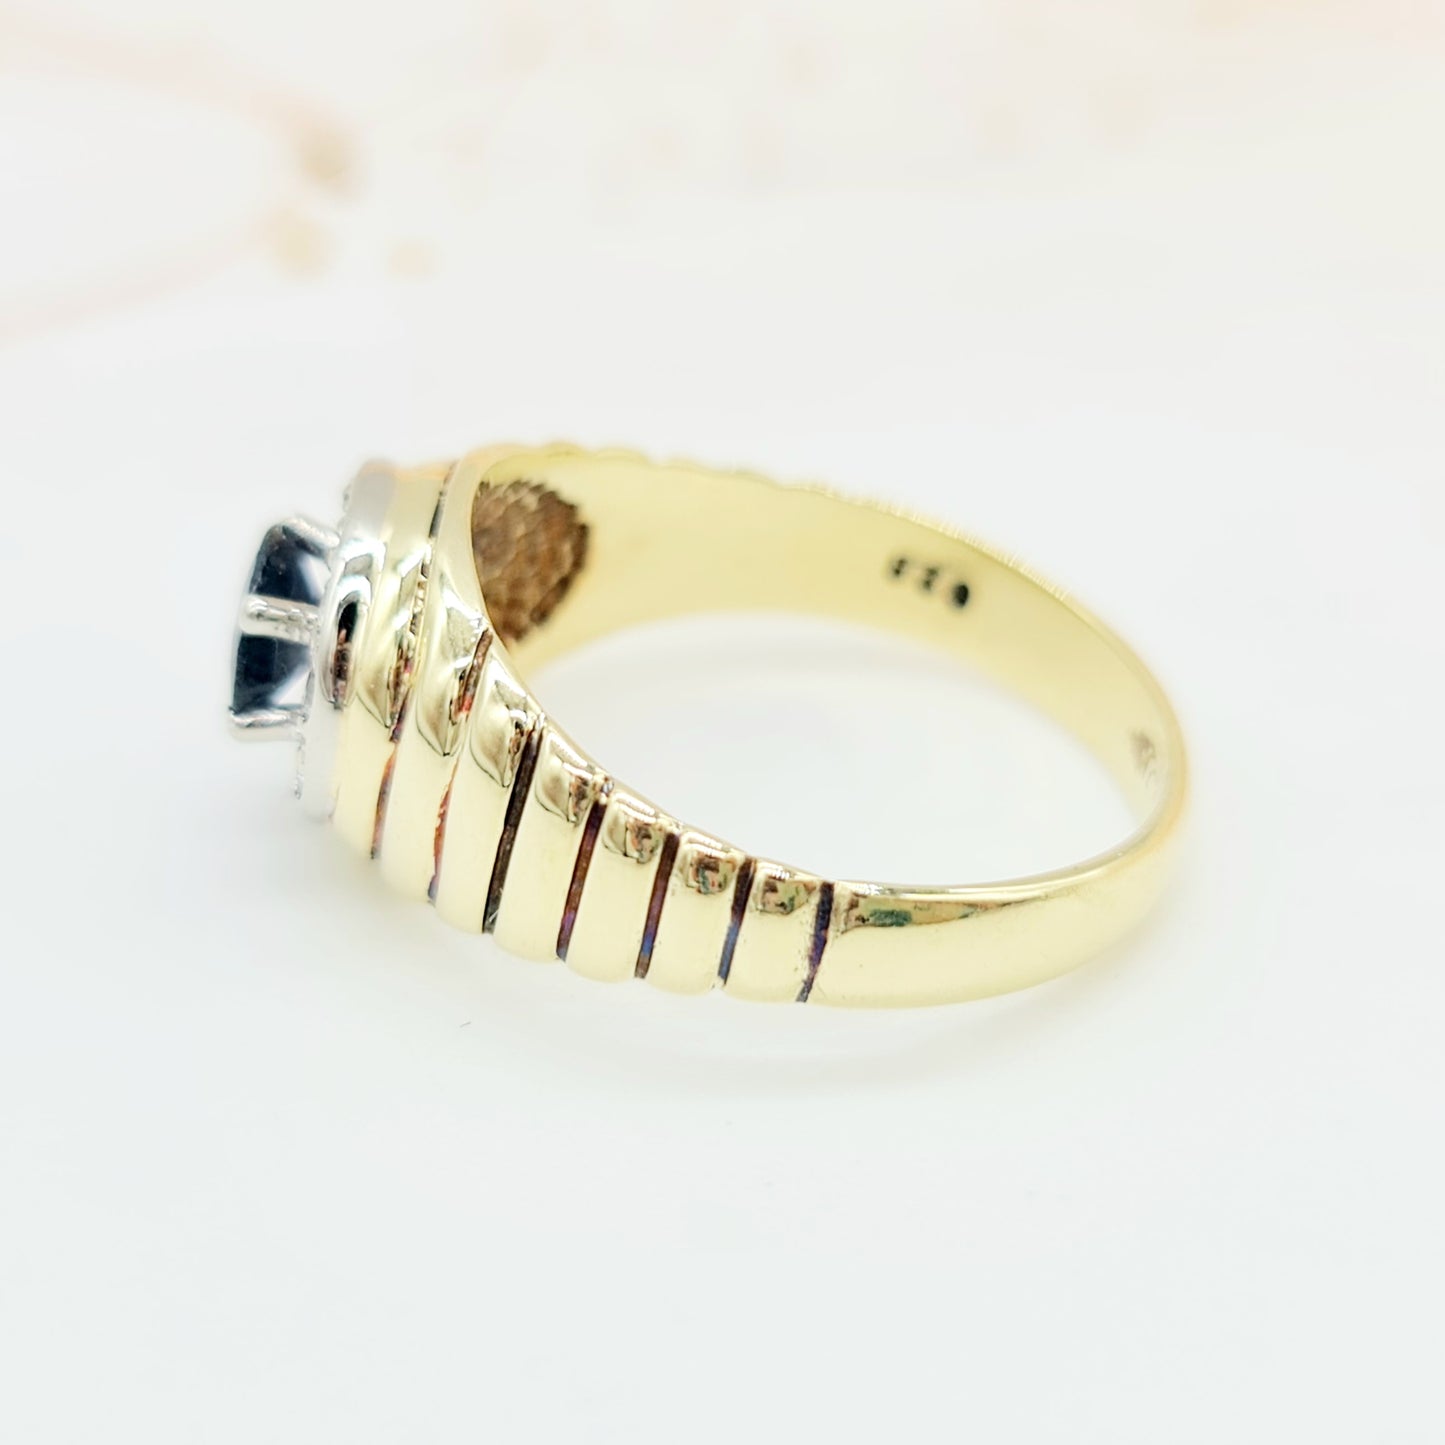 Vintage Ring mit ovalem Saphir umrandet von 10 Brillanten in 585er 14 kt Gelbgold